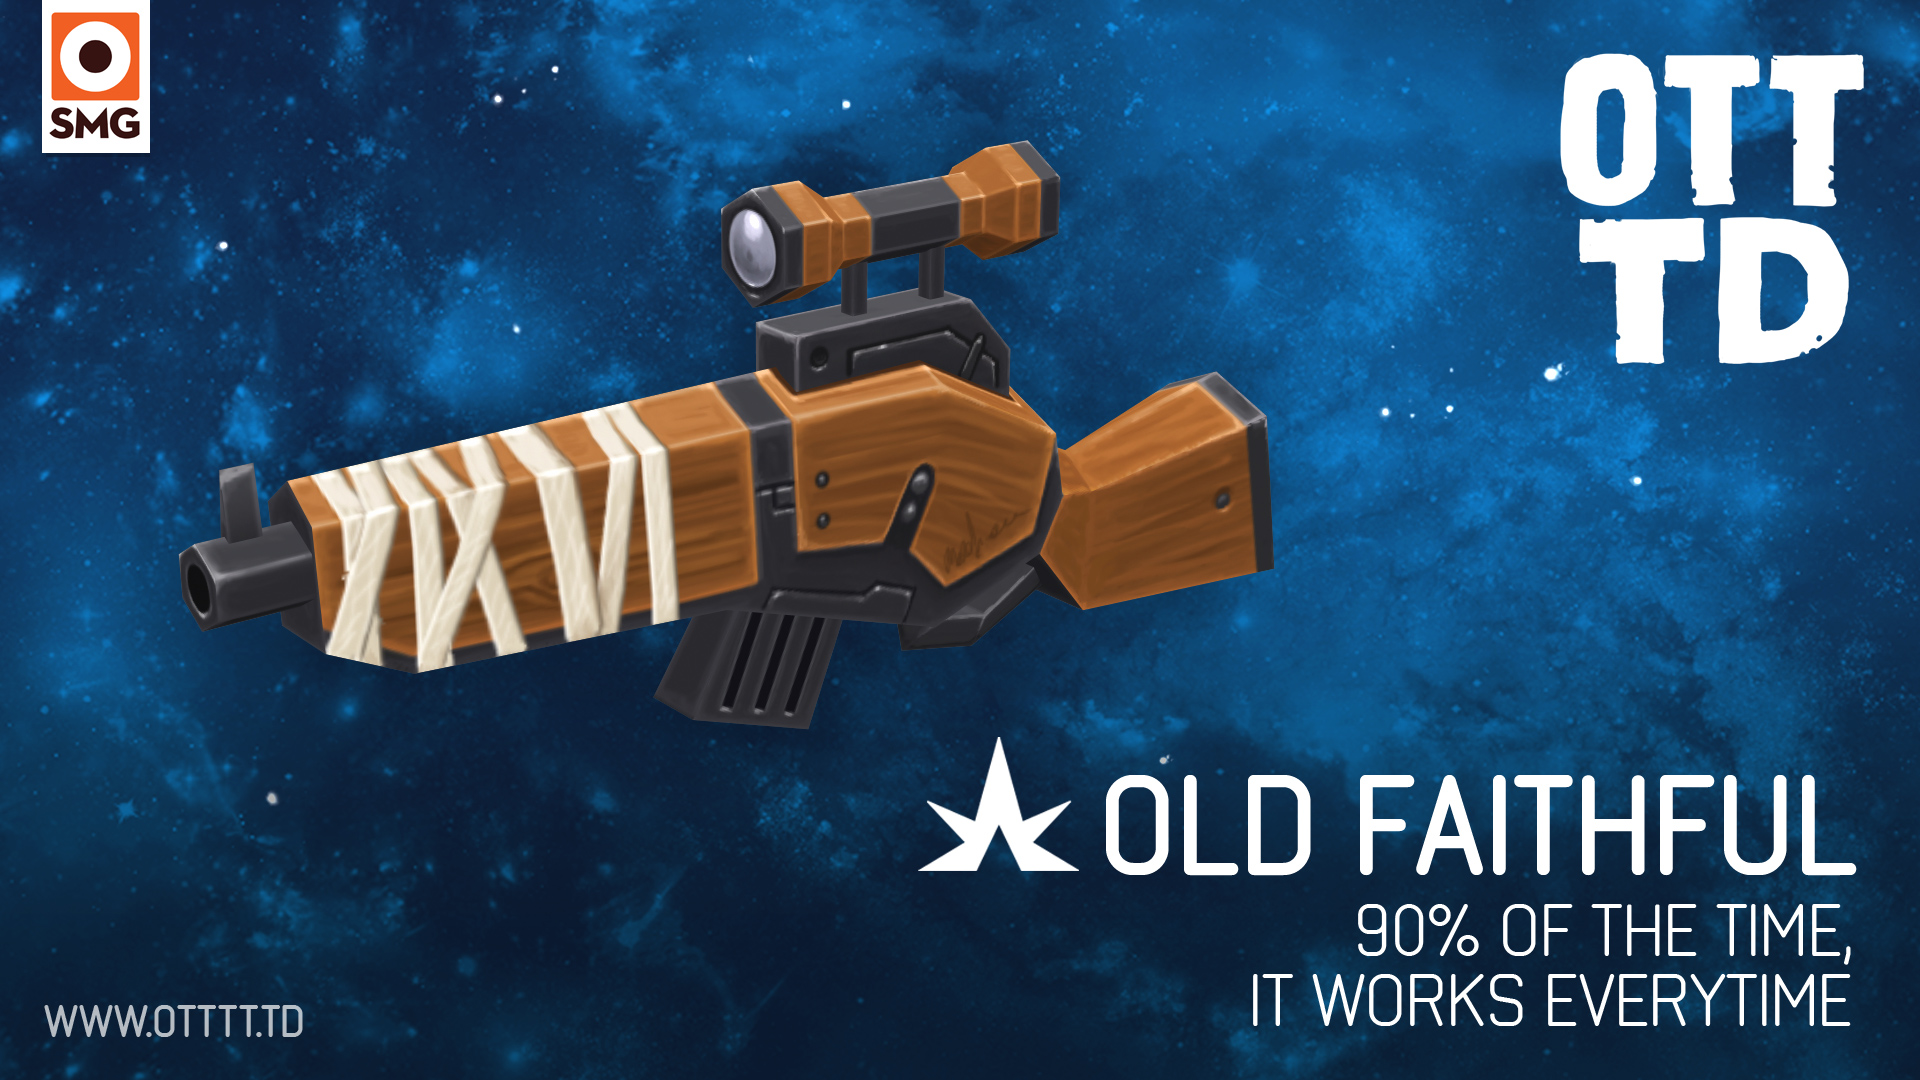 OTTTD-weapons-oldfaithful1920x1080.jpg